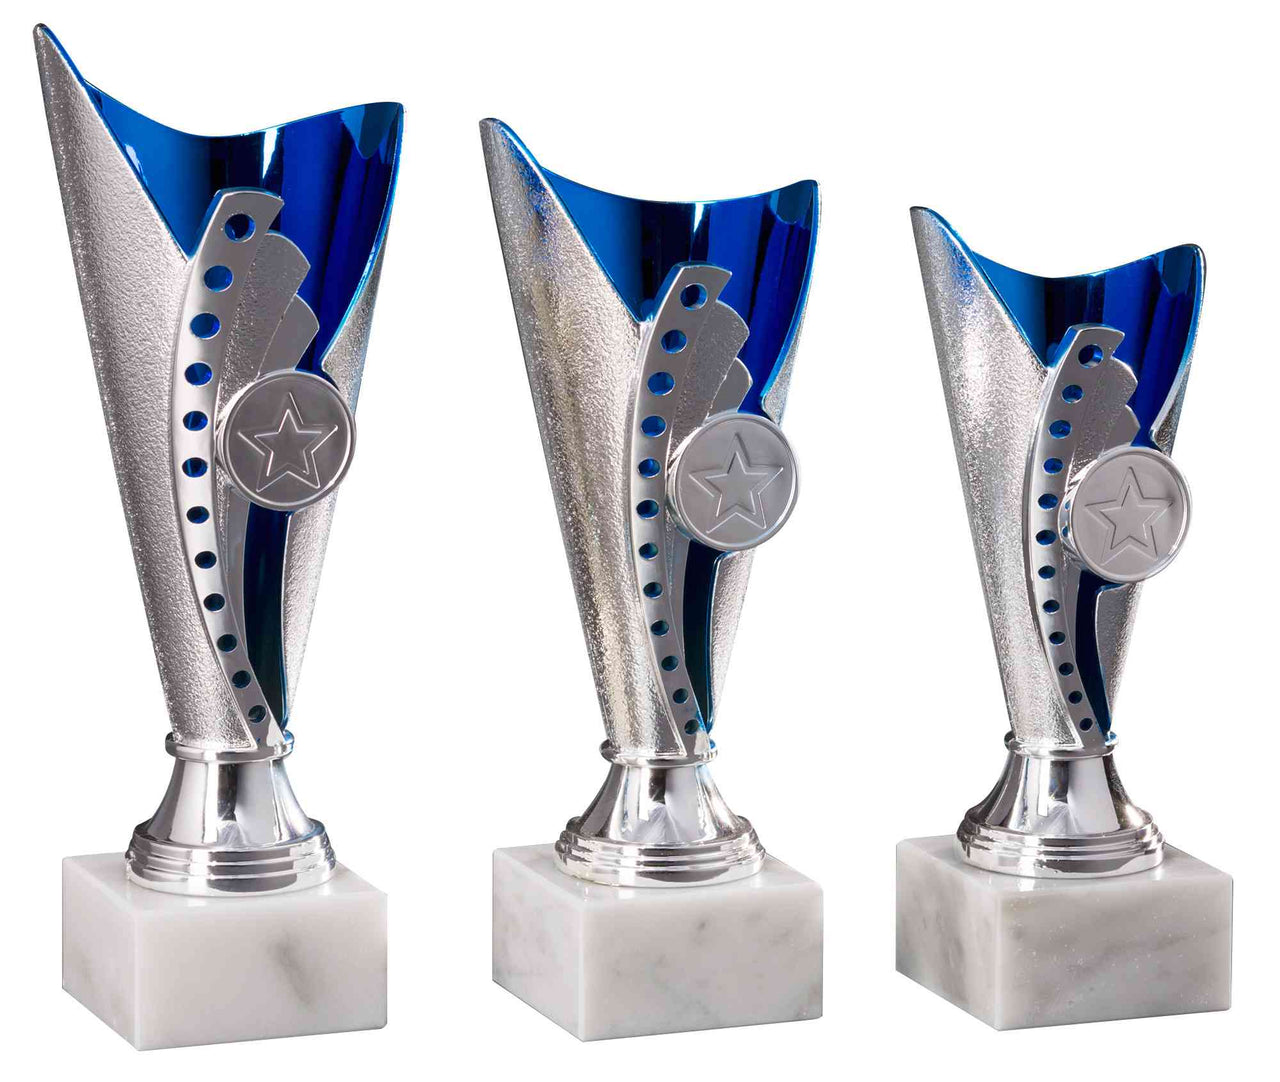 Drei POMEKI Pokale Langenhagen 3-er Pokalserie 170 mm - 210 mm PK754550-3-E25 in exklusivem Design aus silber und blau mit Stern-Emblemen auf einem weißen Hintergrund.